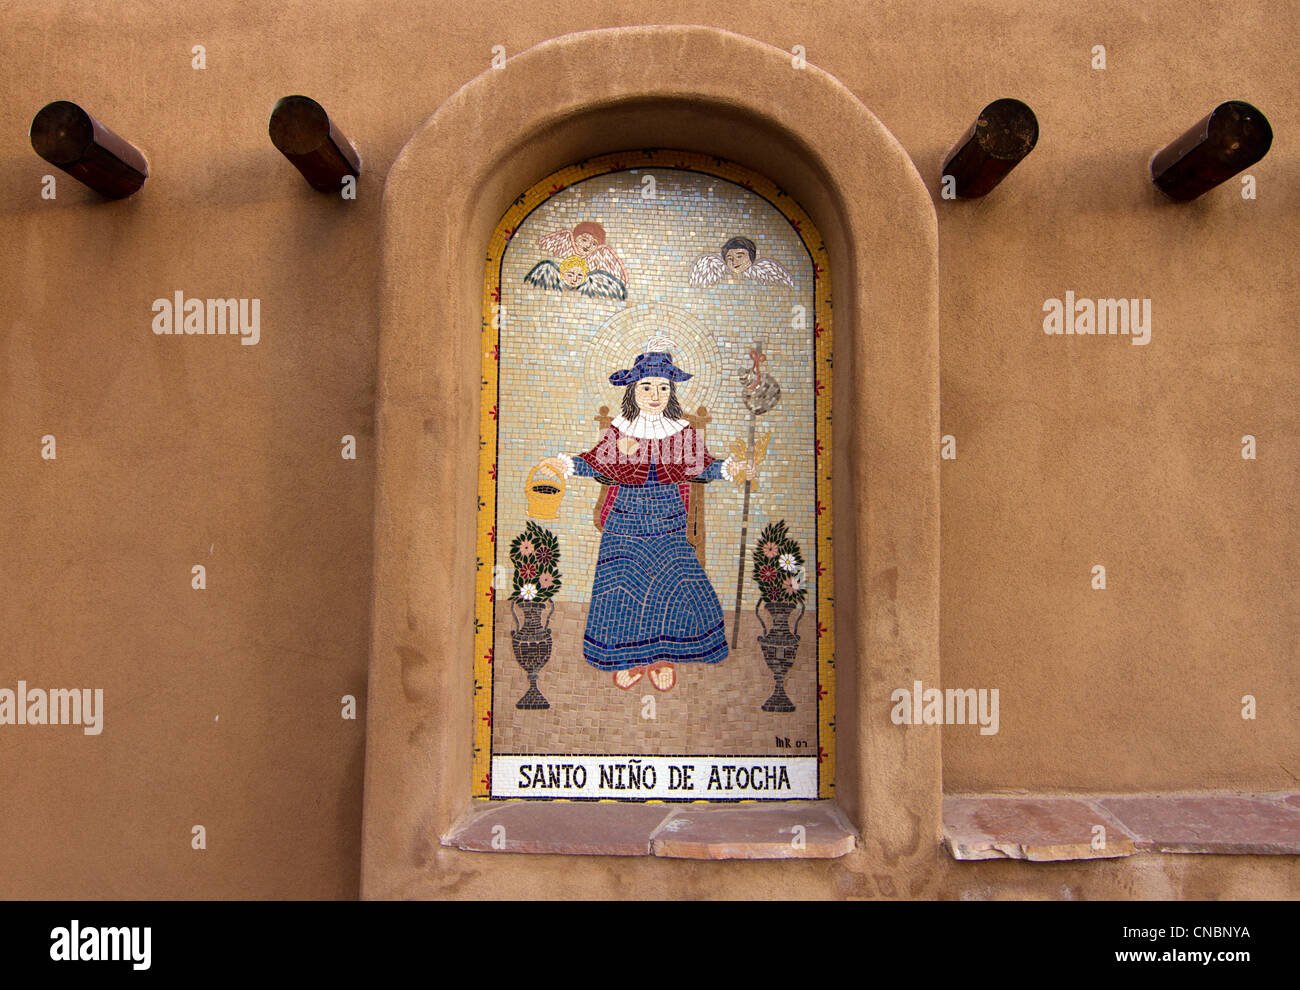 Die Santo Niño de Atocha, eine römisch-katholische Bild vom Jesuskind, außerhalb einer Kirche in Chimayo, New Mexico. Stockfoto